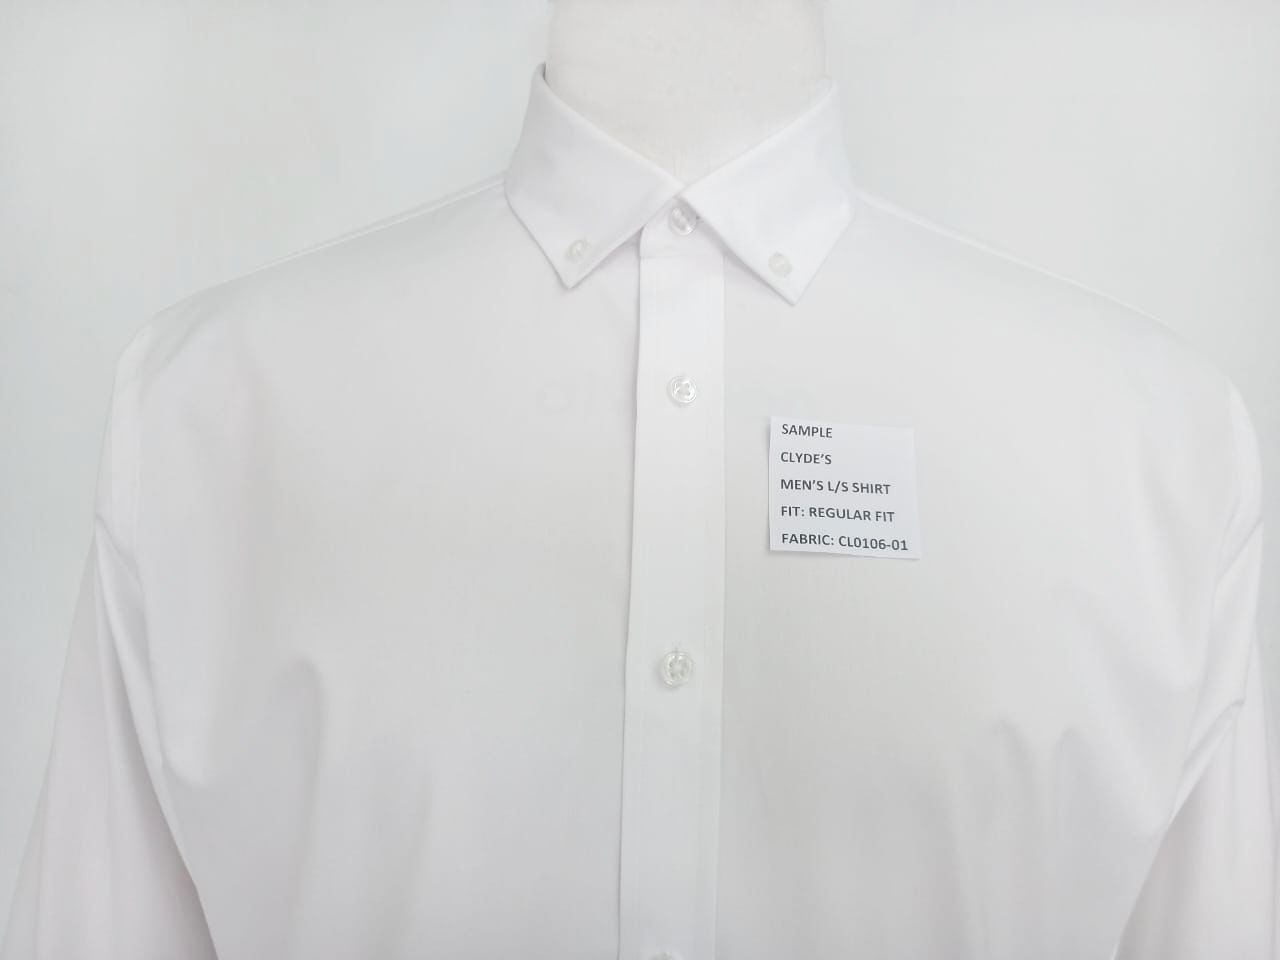 Men’s Classic White Shirt for Clyde's Restaurant Group